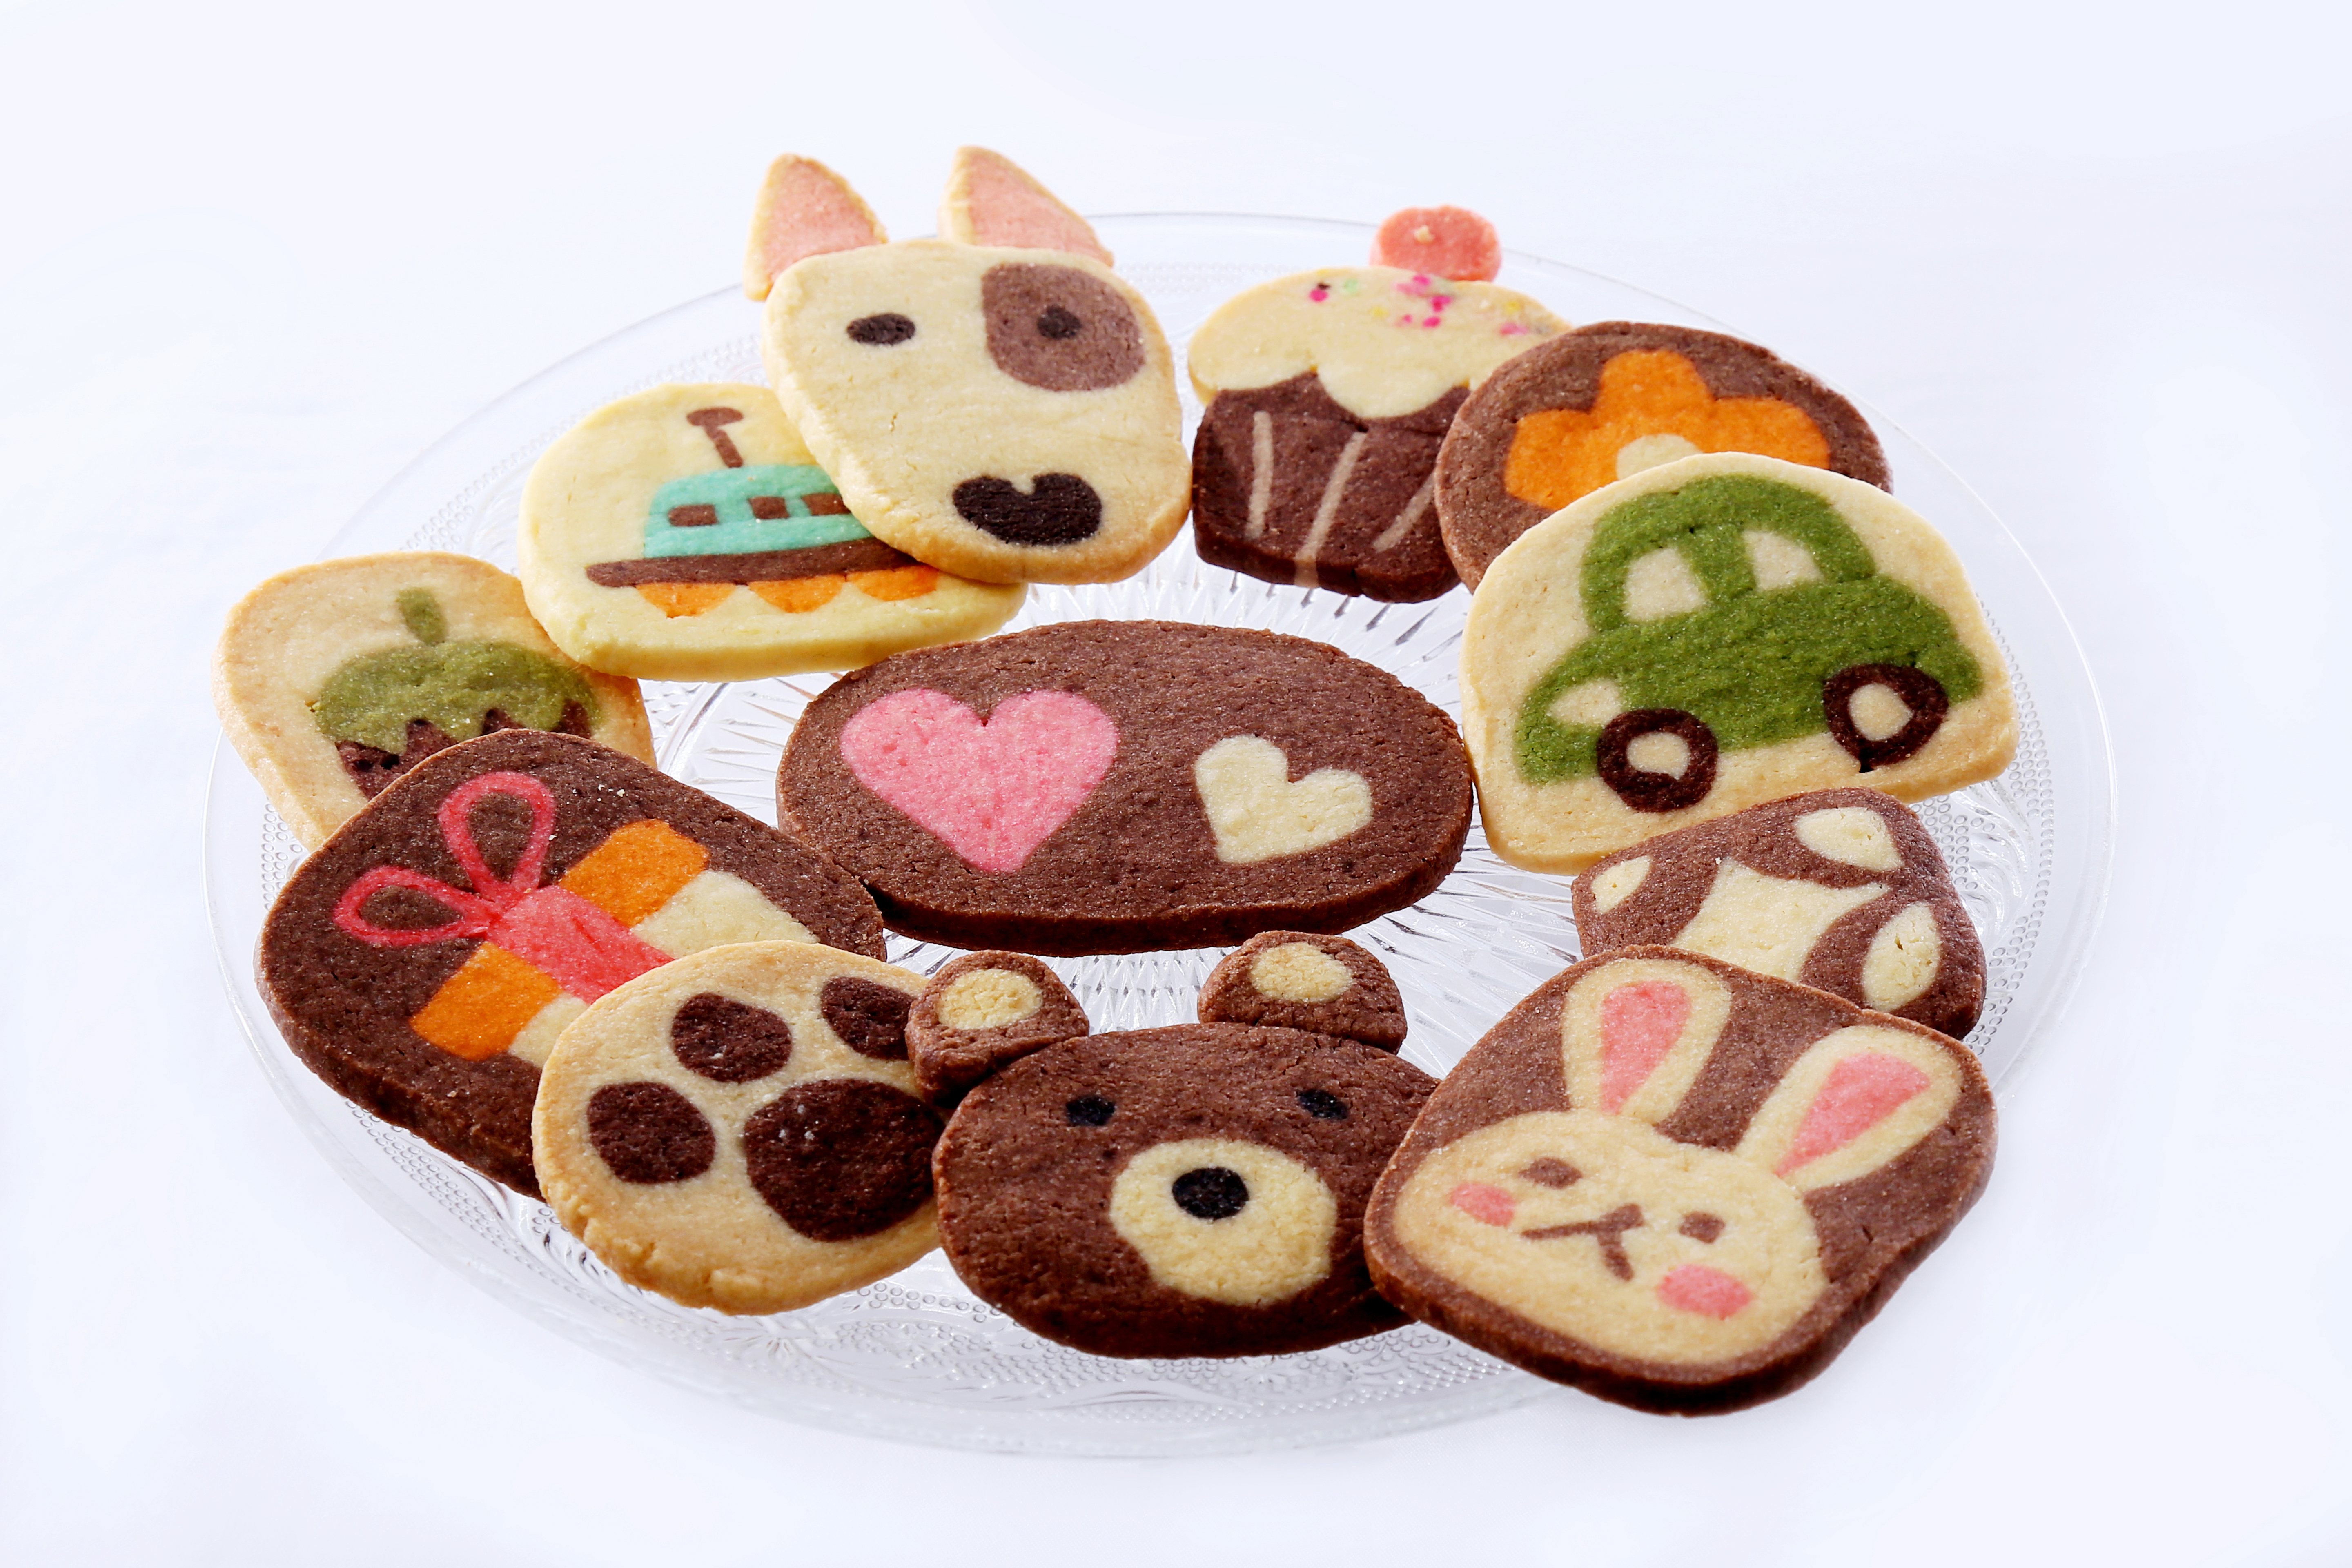 趣味 サロンを開きたい方も 日本アイスボックスクッキー協会